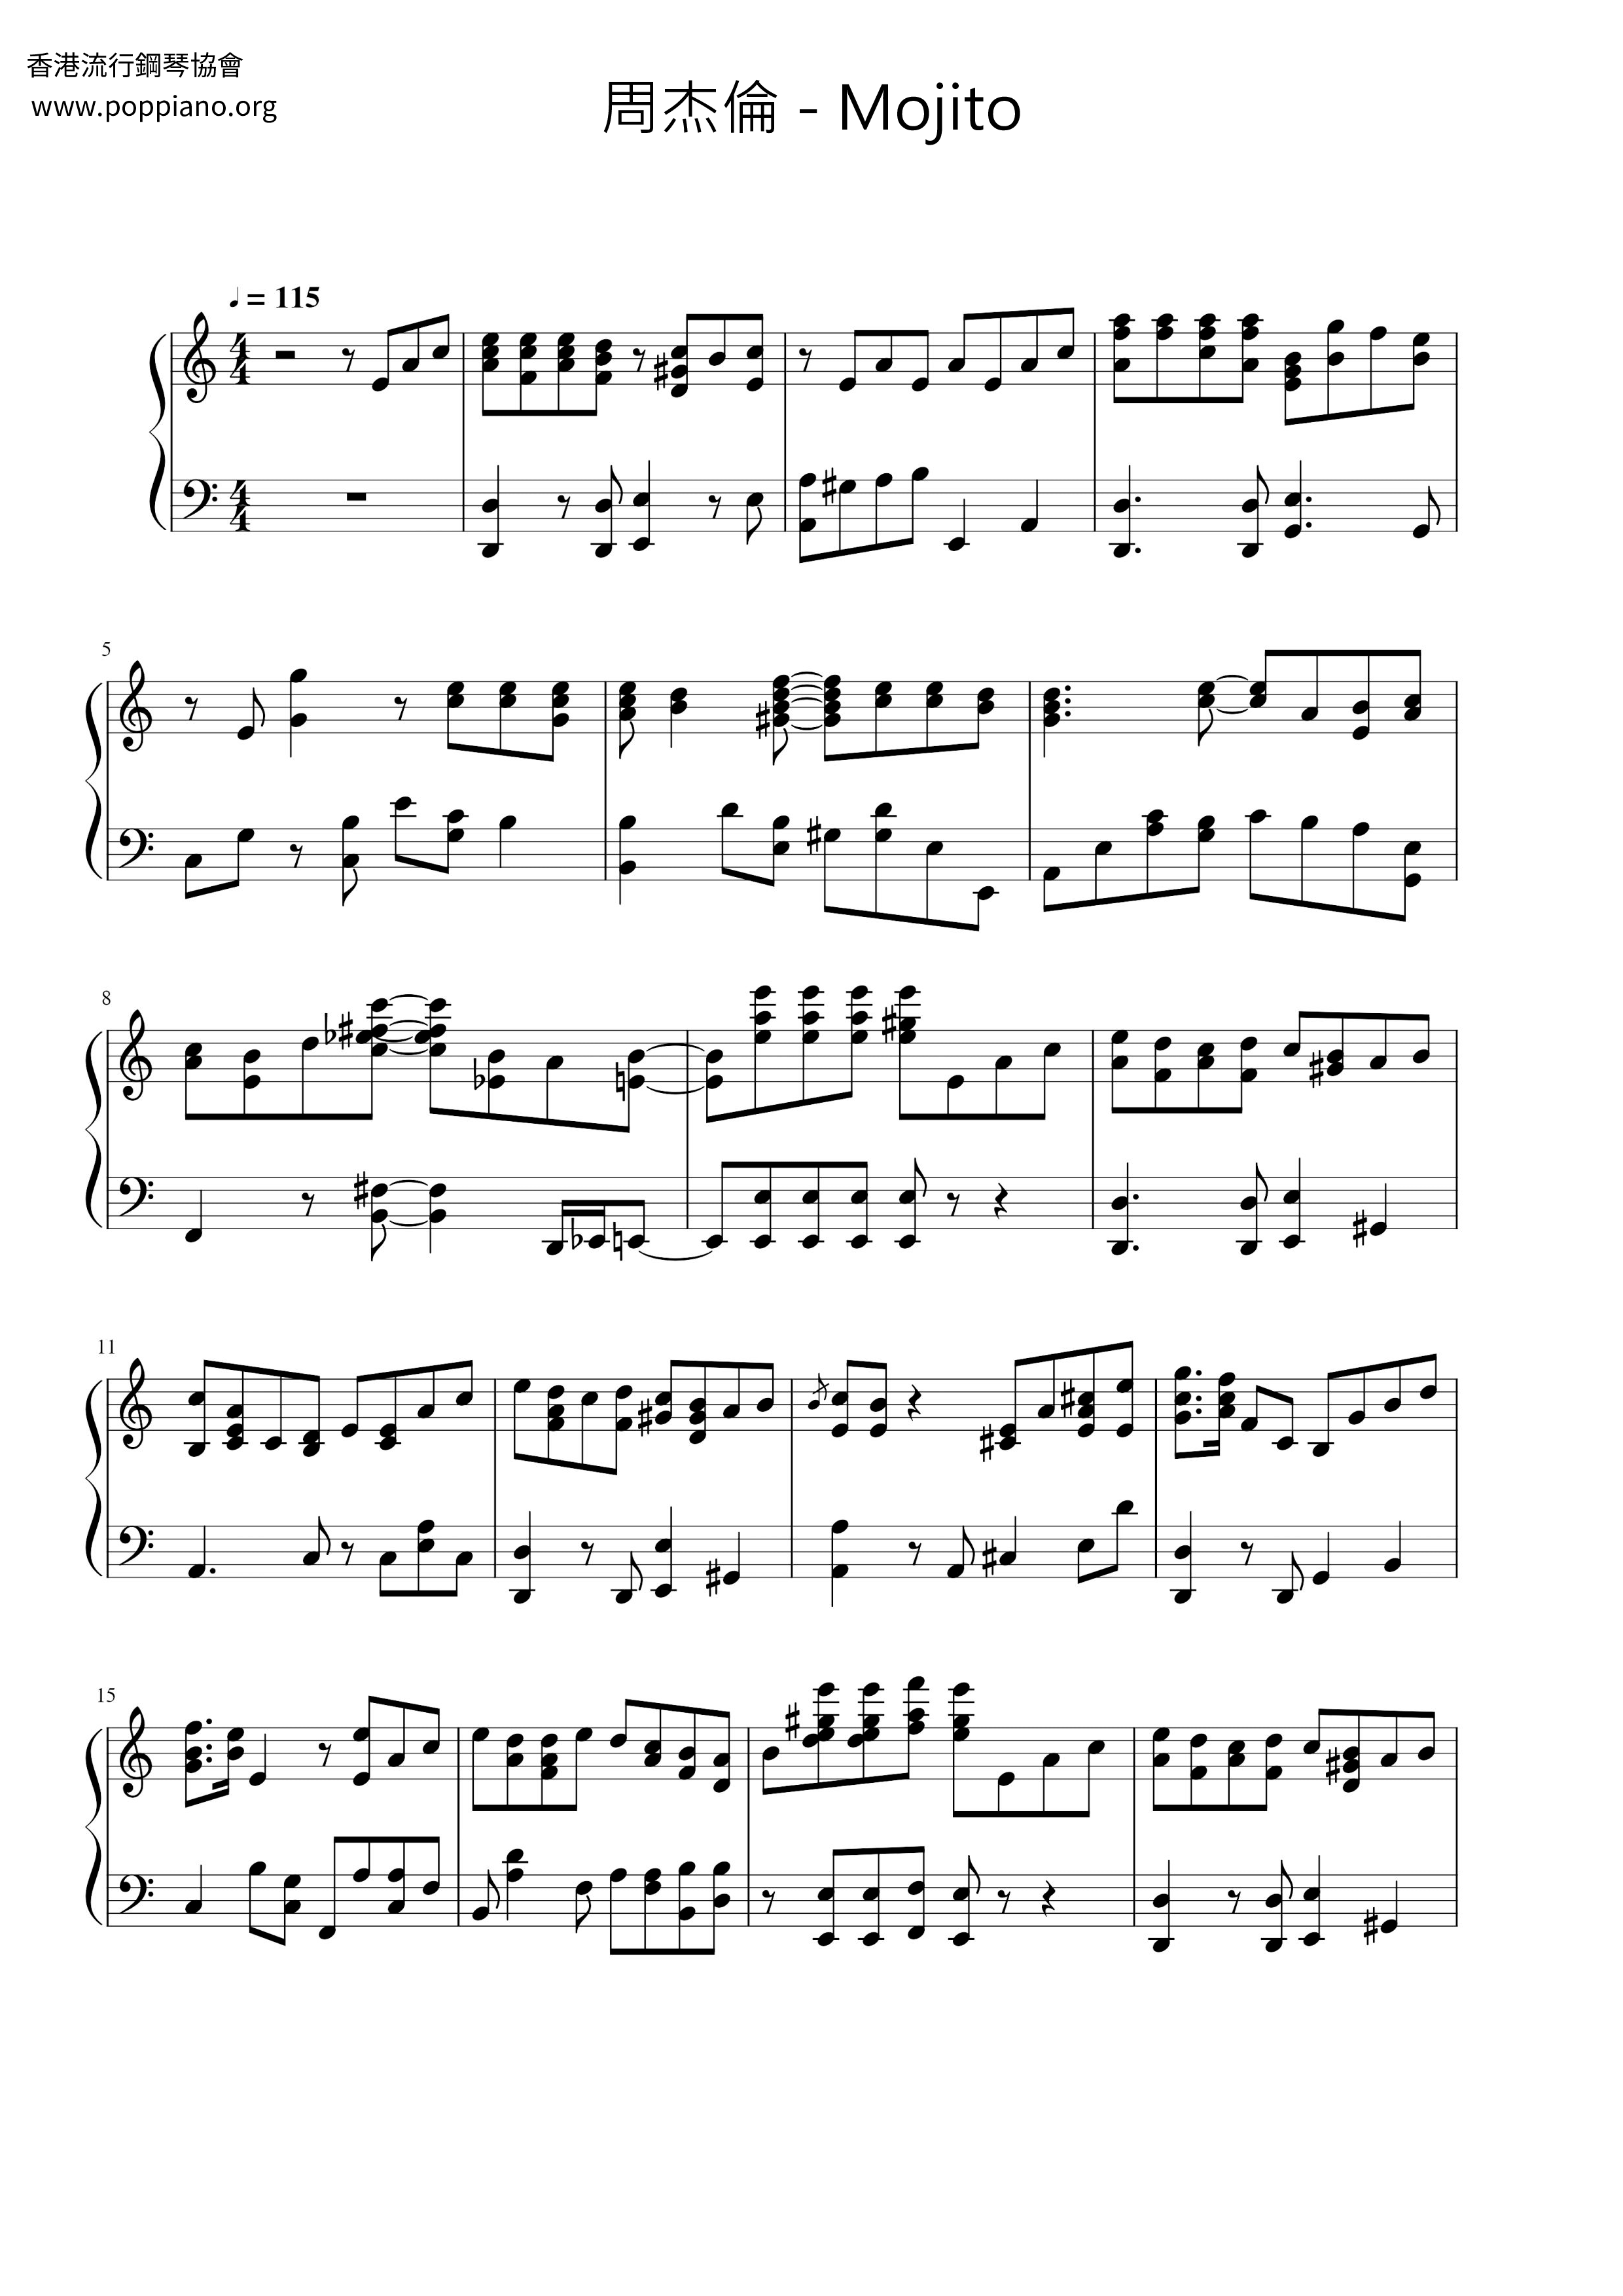 Mojito Score